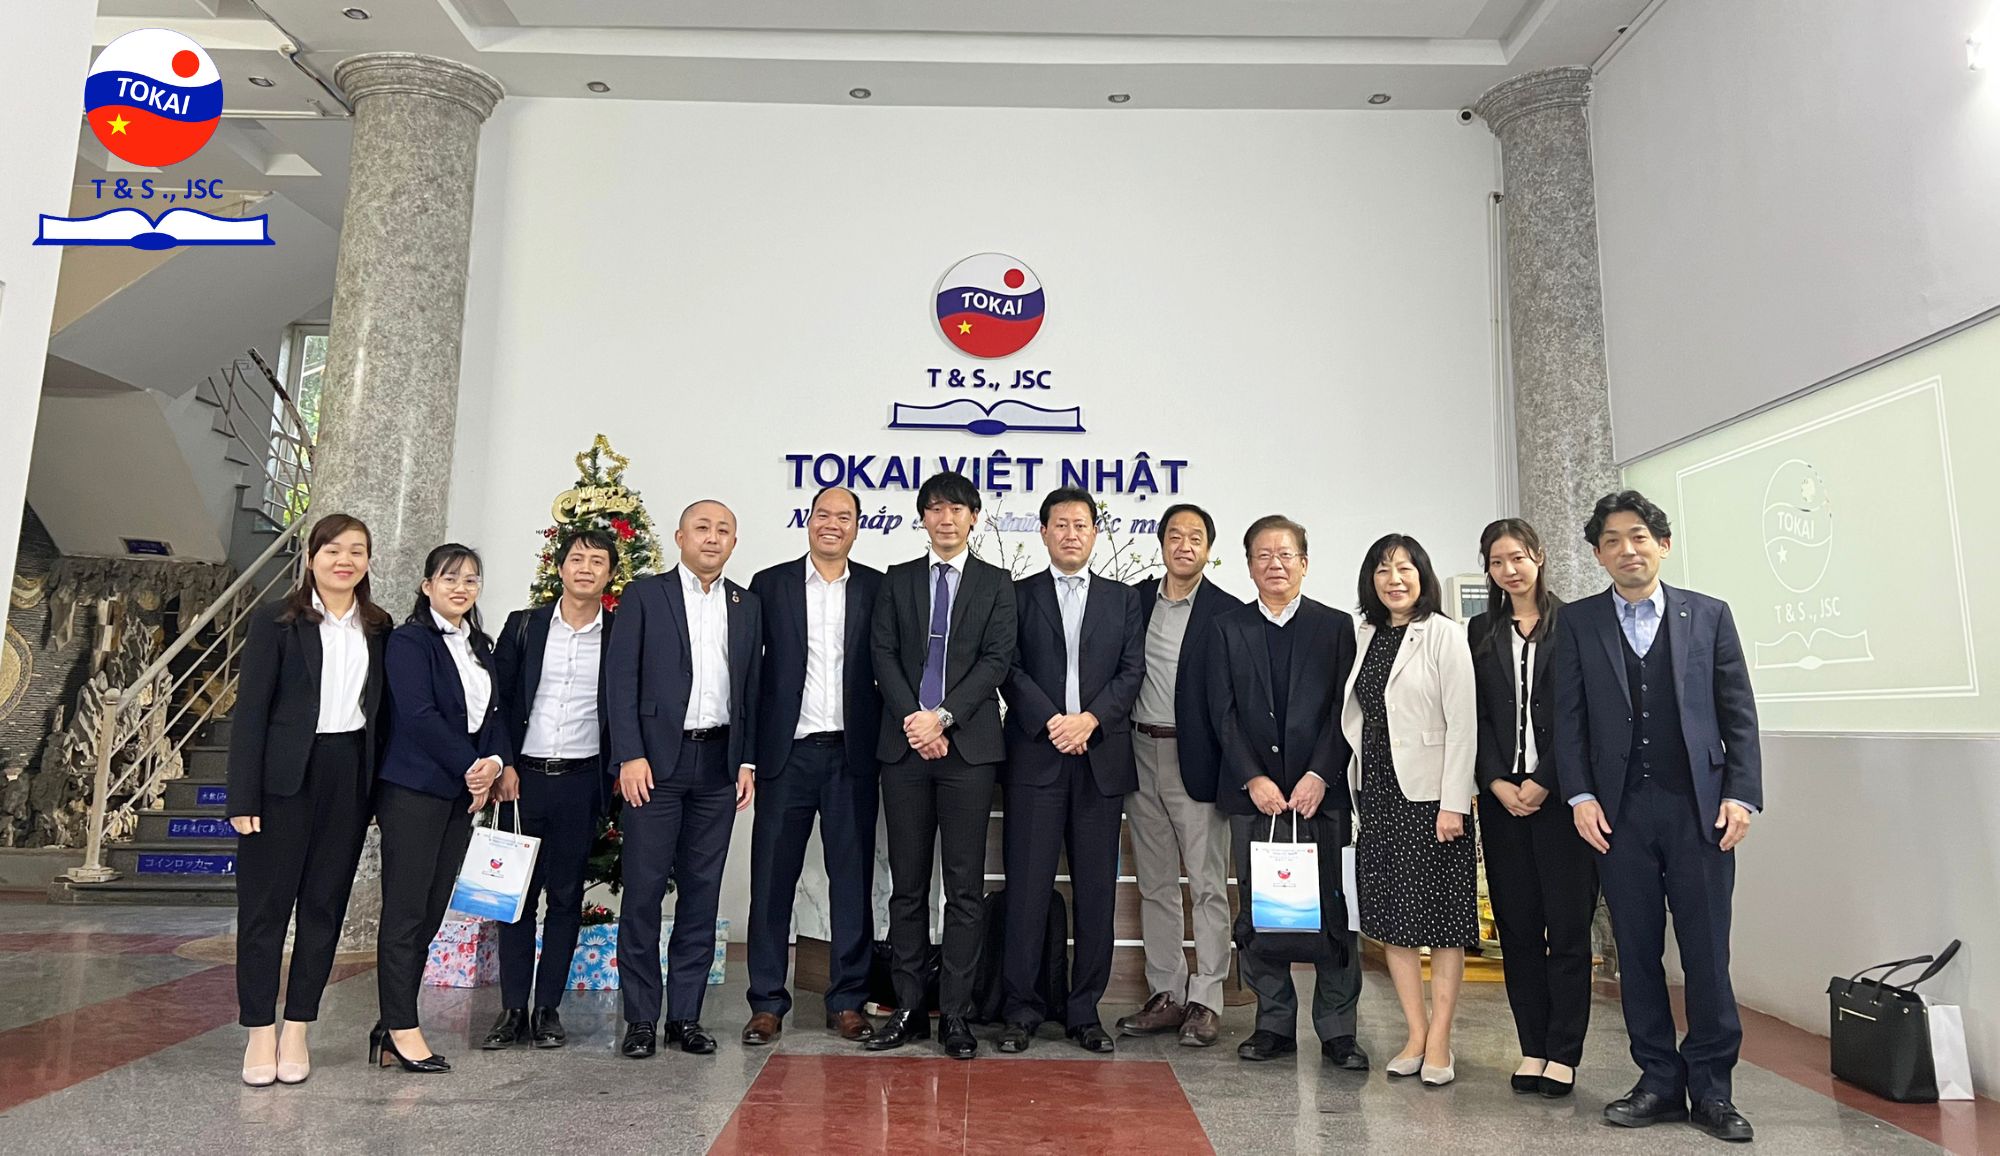 Đại diện tỉnh và Hiệp hội chăm sóc tỉnh Chiba đến làm việc và thăm trung tâm Tokai Việt Nhật